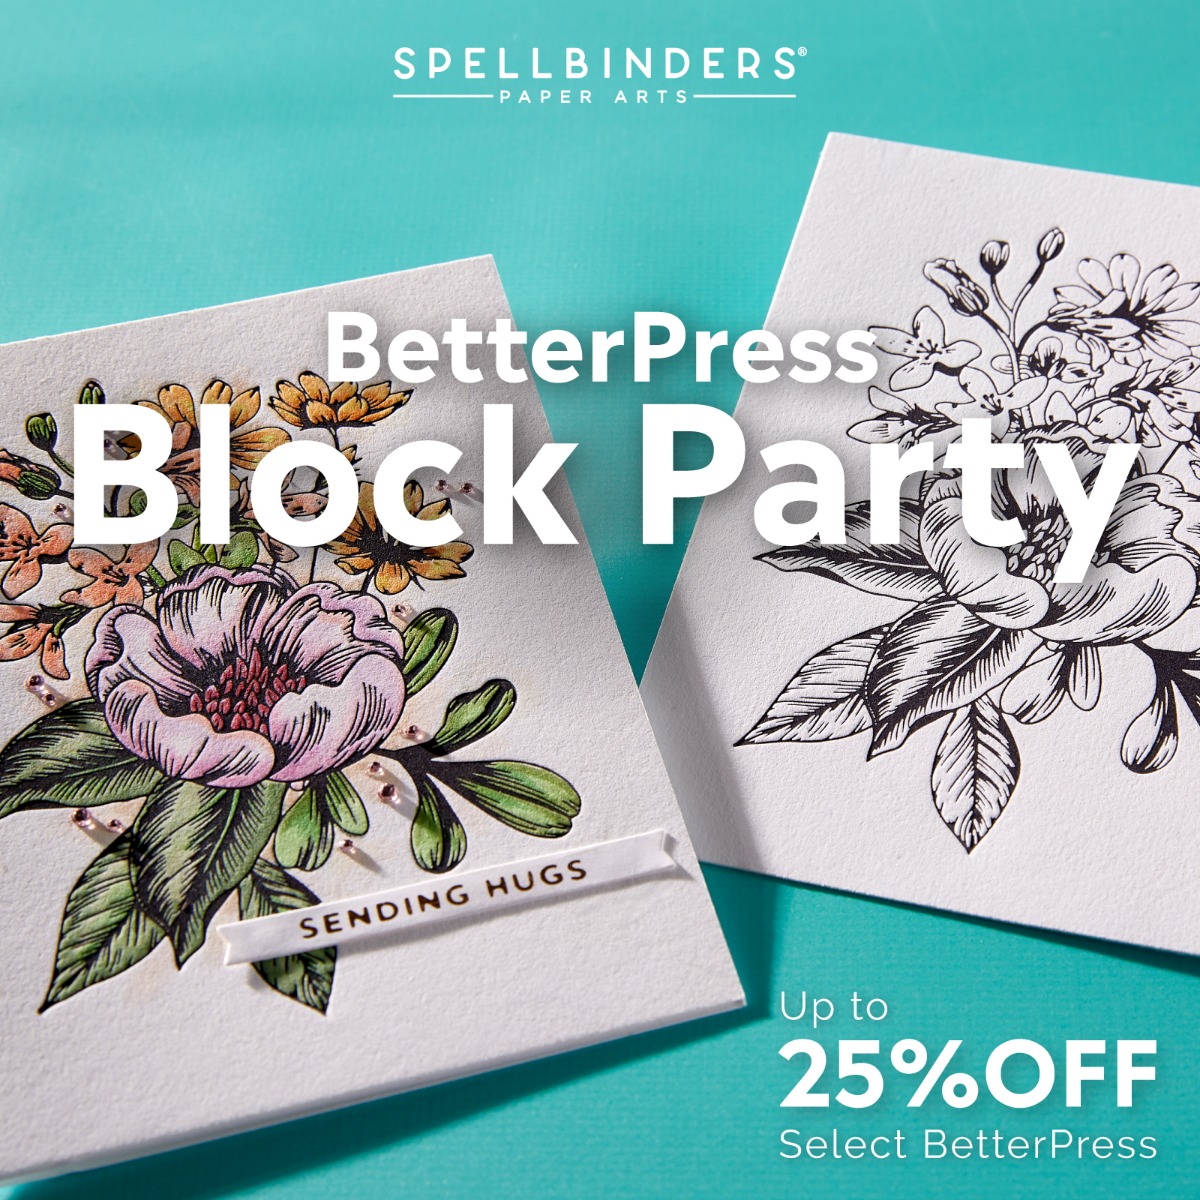 Spellbinders BetterPress Promotion